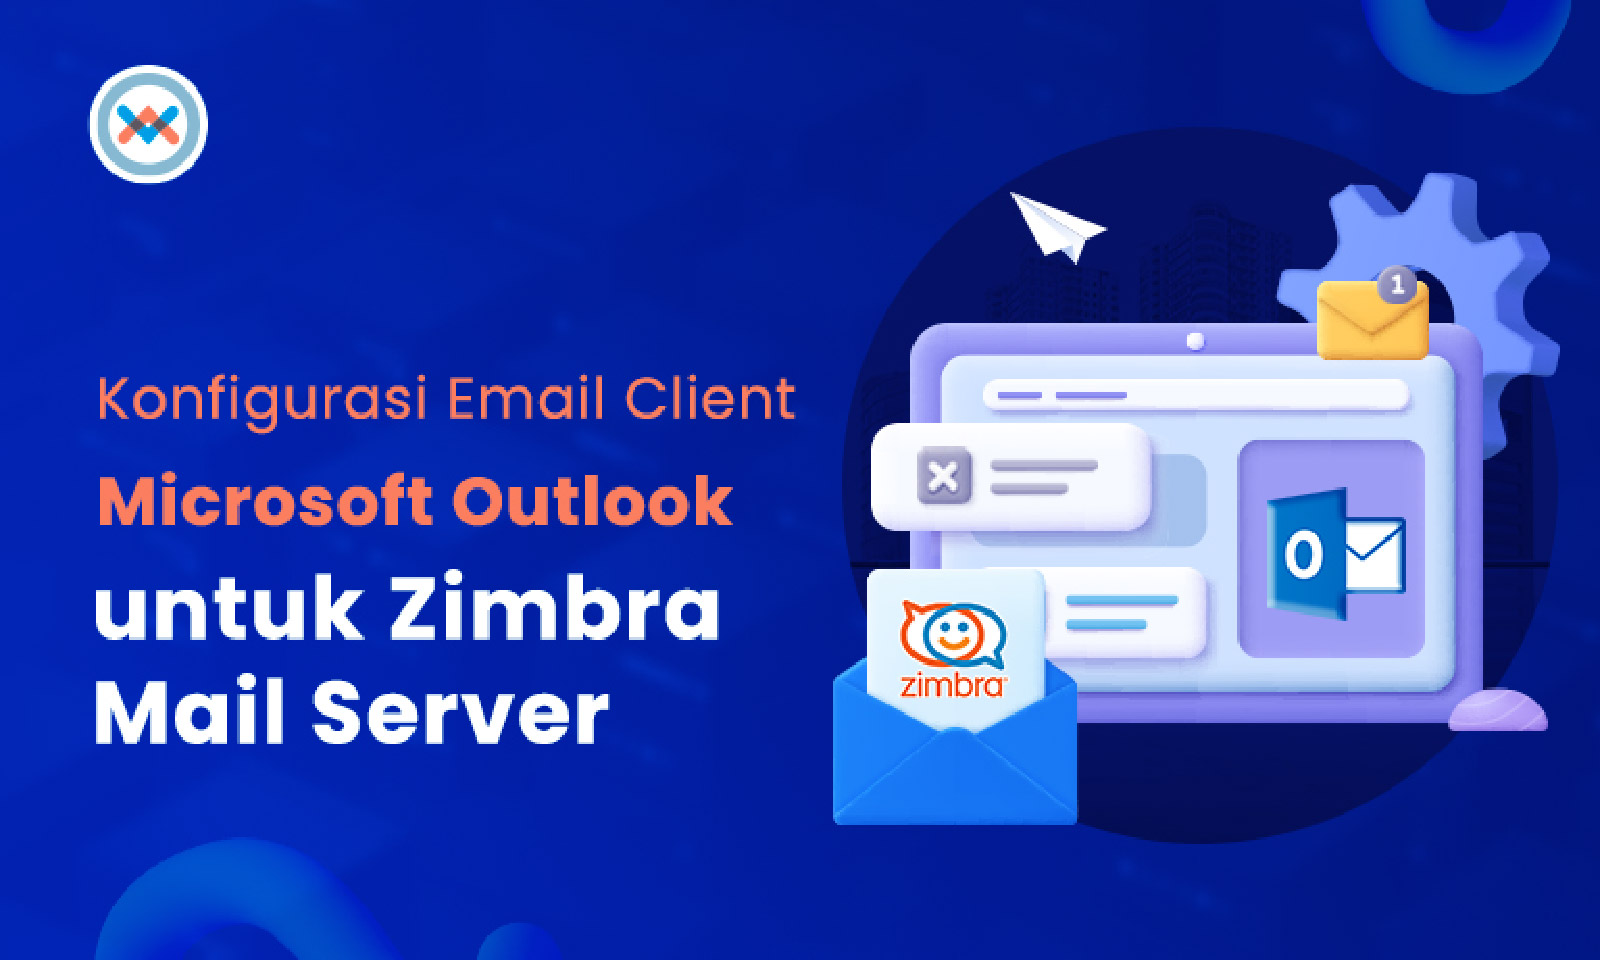 Email Client Microsoft Outlook untuk Zimbra Mail Server dan Konfigurasinya